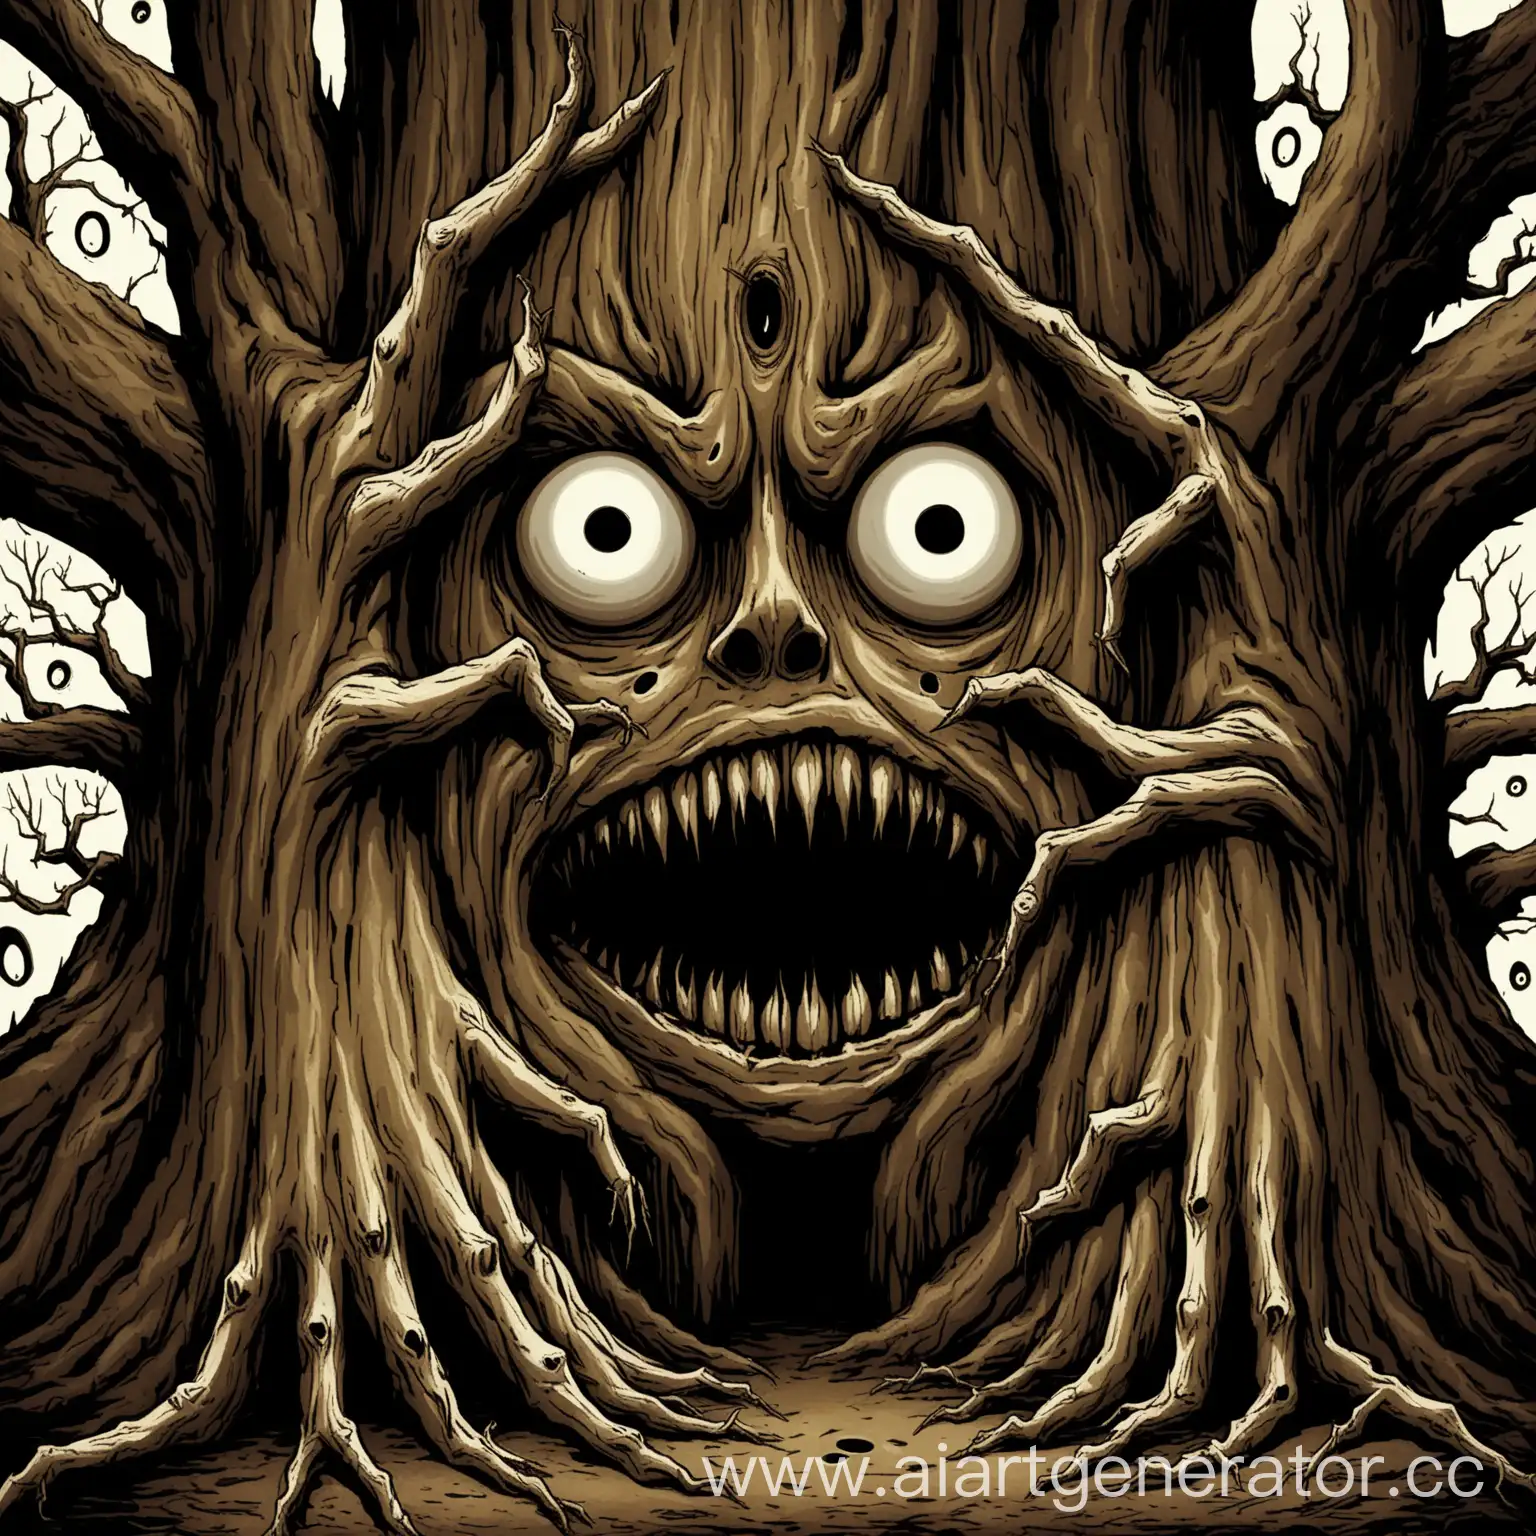 Большое дерево с страшным лицом, рот и глаза это дупла, руки это две ветки с кривыми длинными пальцами-палками.